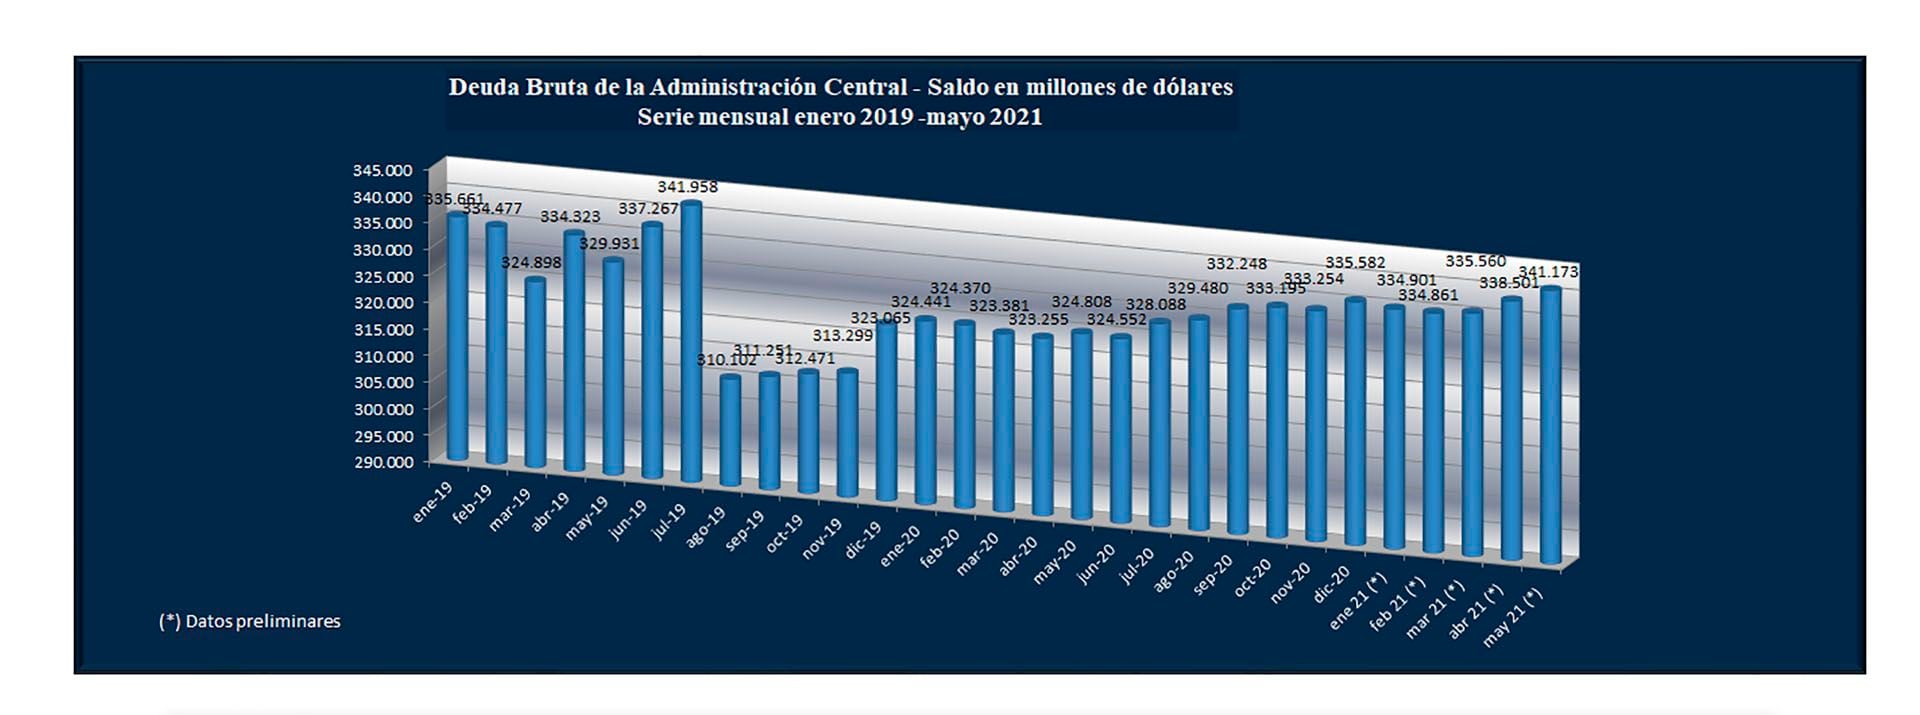 El stock de deuda del país
Fuente: Secretaría de FInanzas